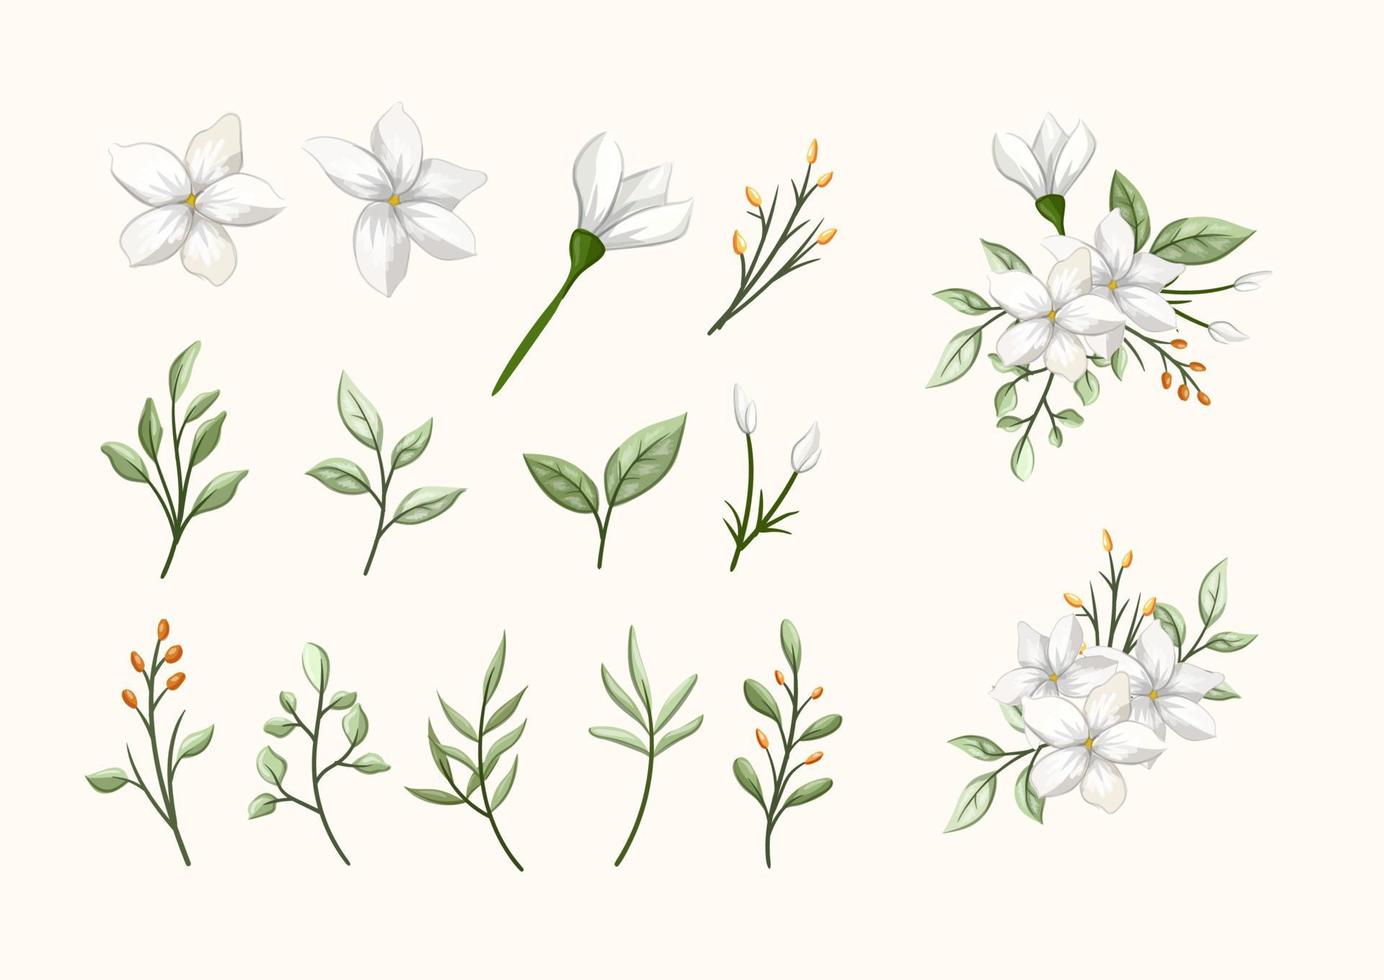 jasmijn wit schoonheid bloem met bladeren reeks voor boeket voor bruiloft liefde romance vector